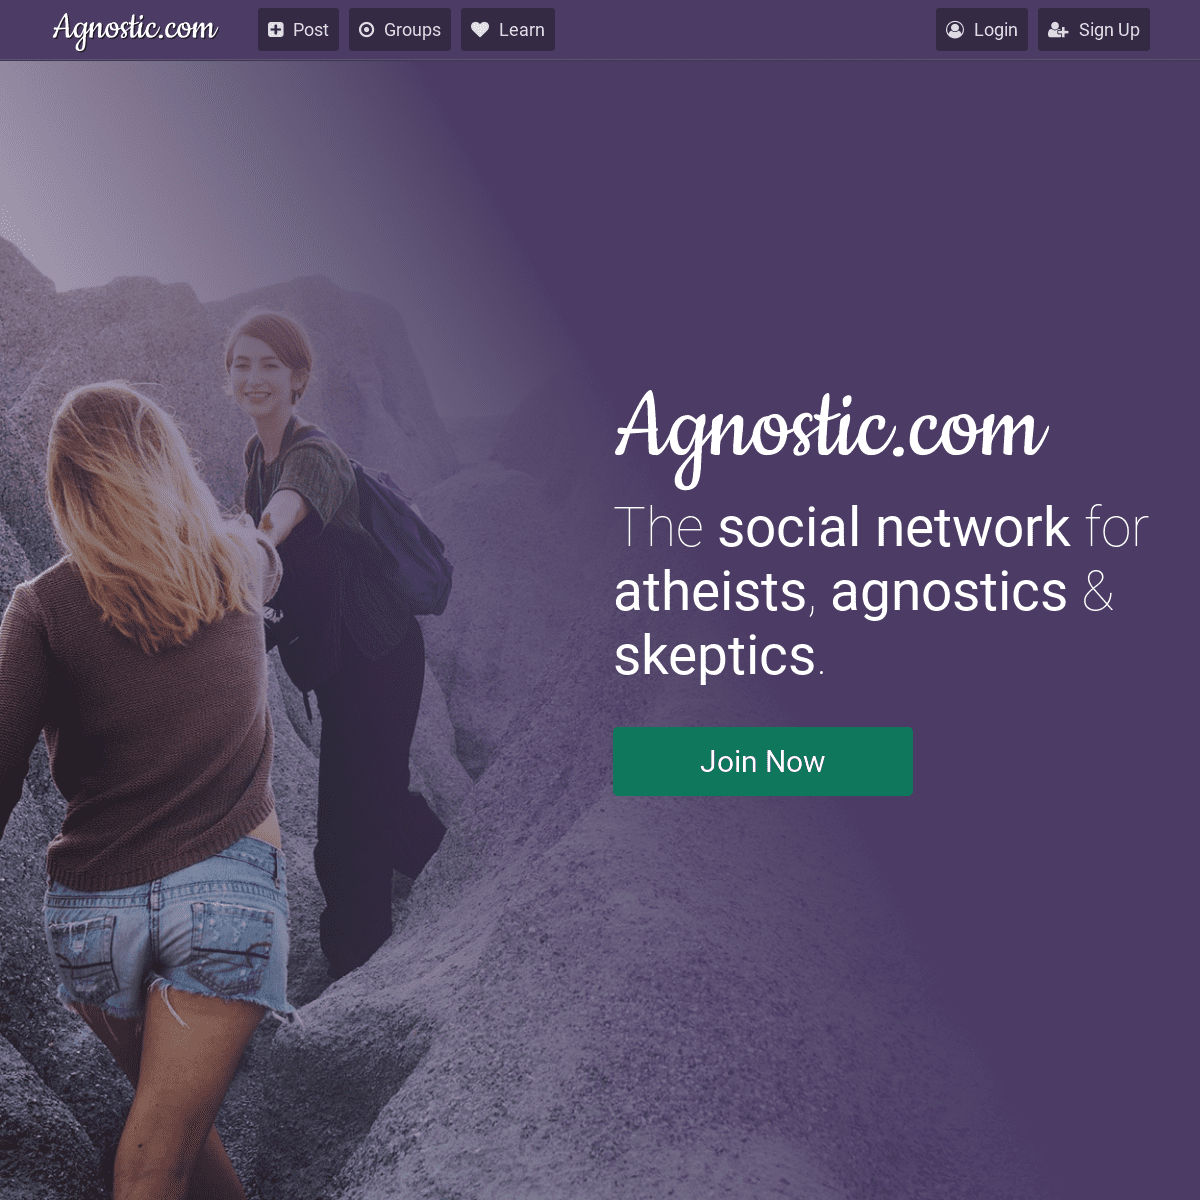 A complete backup of agnostic.com